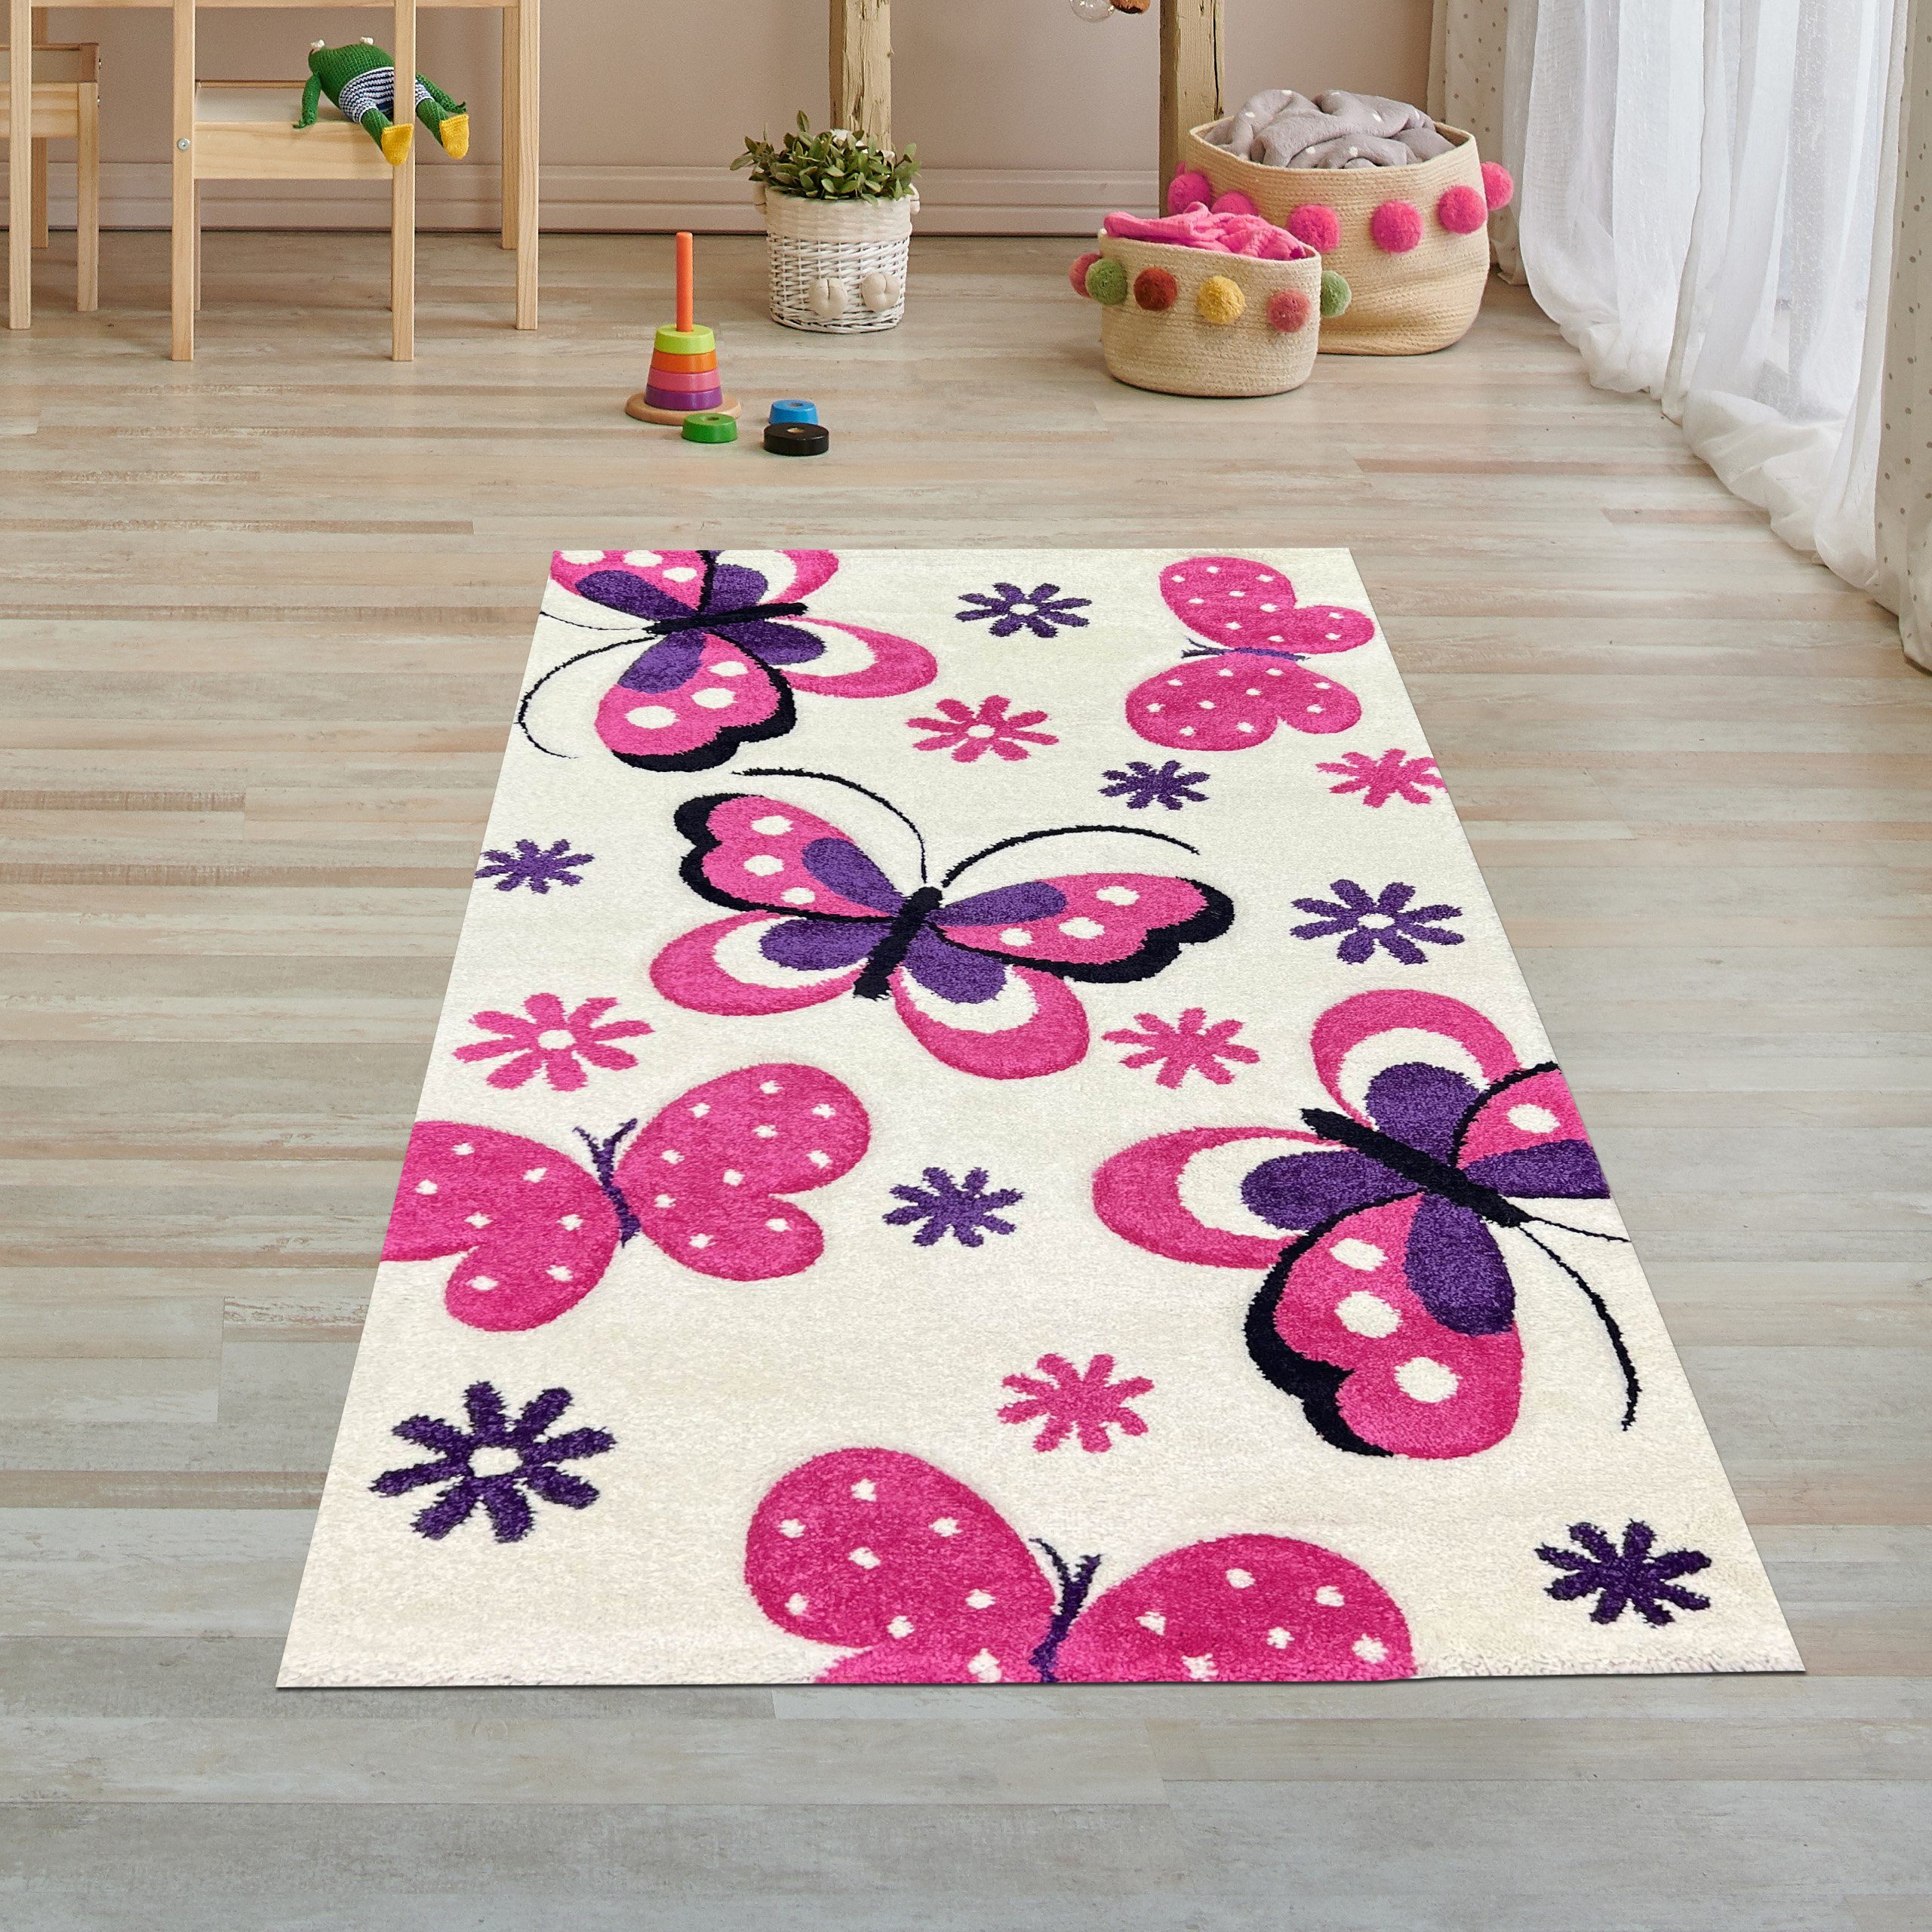 13 Kinderteppich creme rechteckig, Schmetterlingen Kinderzimmer-Teppich pink, mit mm Höhe: Teppich-Traum,